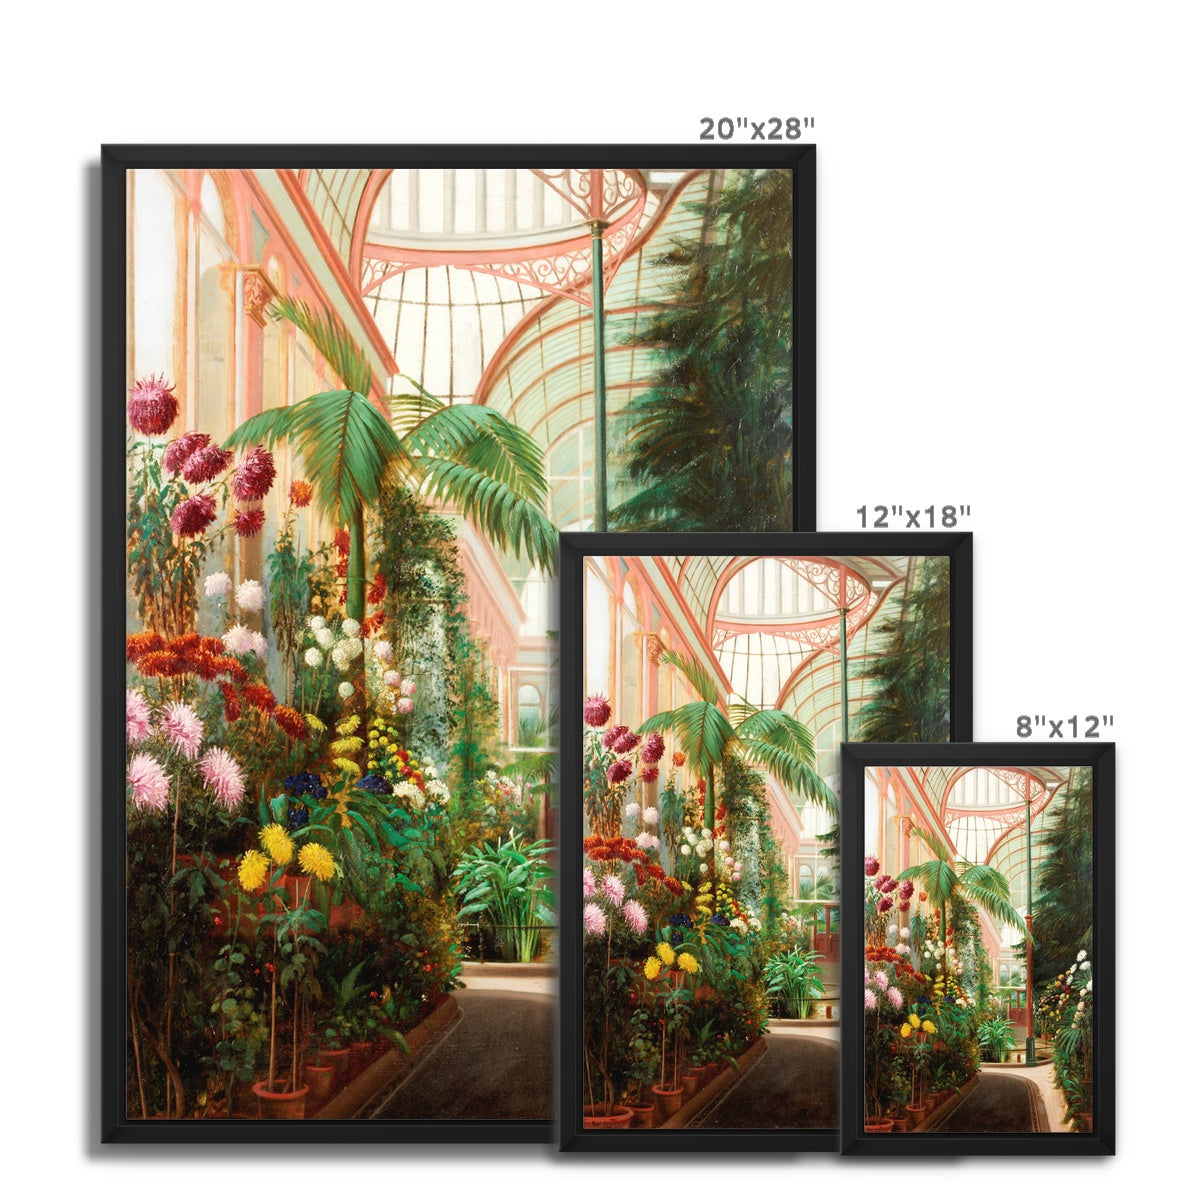 Framed Canvas - Sunderland Winter Gardens Interior by Daniel Marshall